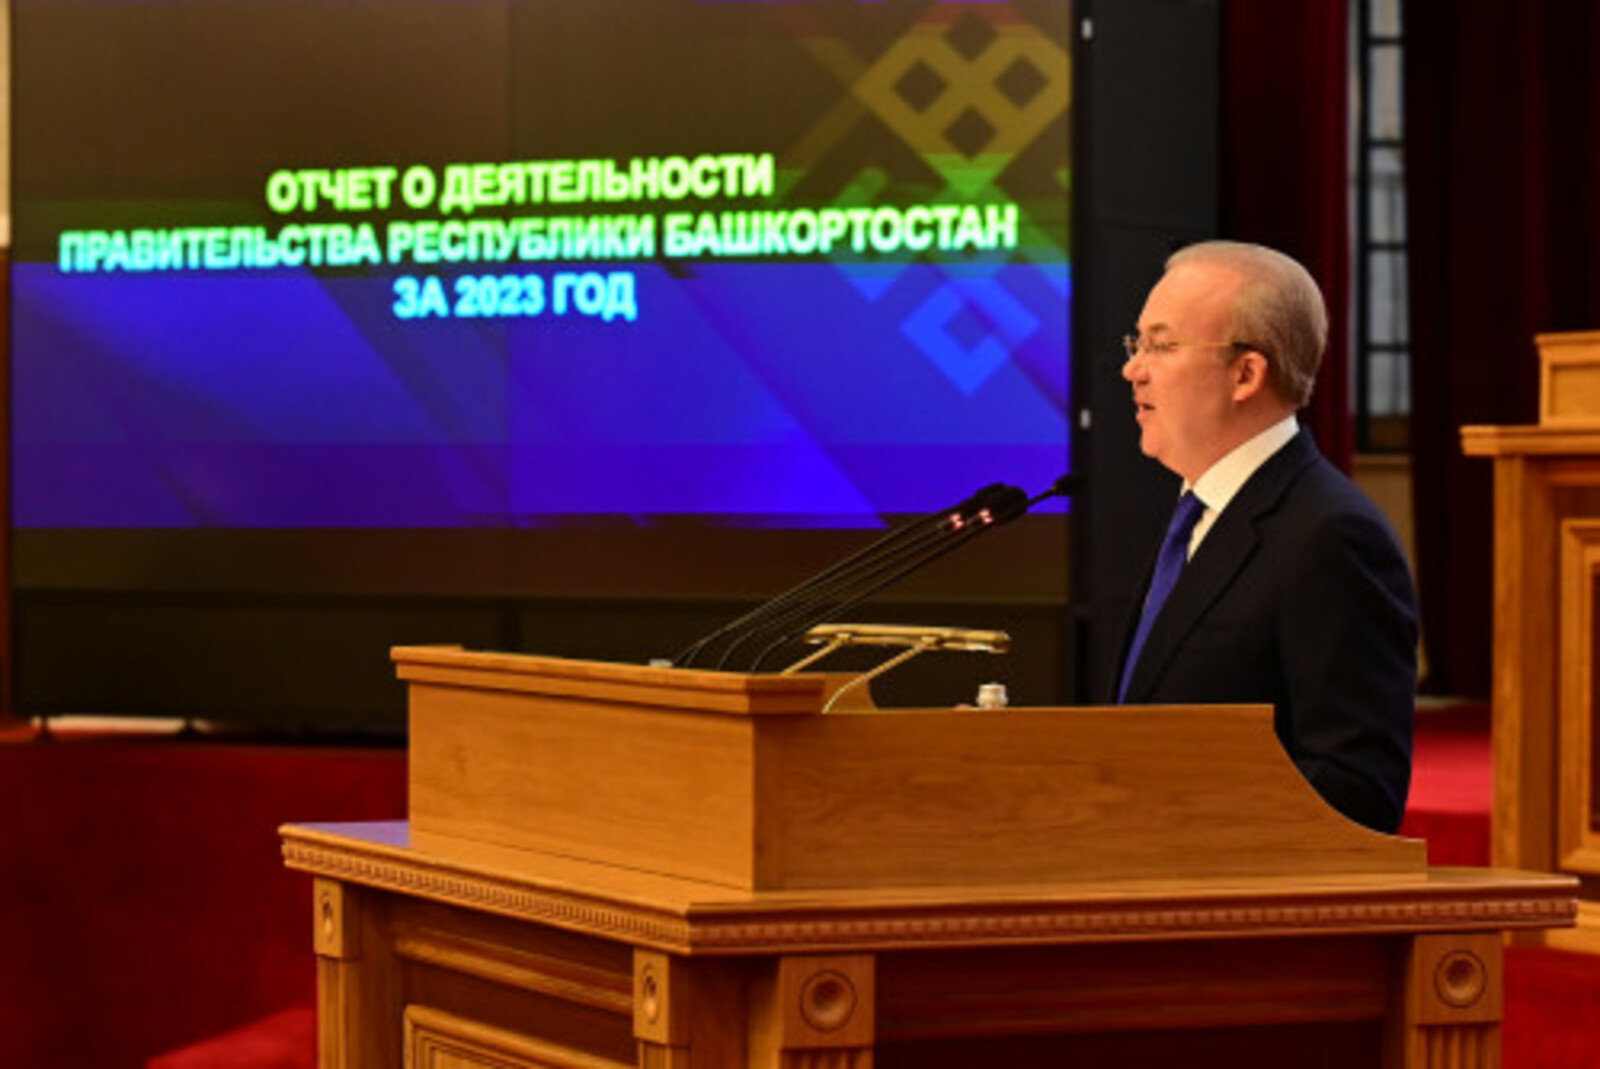 Андрей Назаров: В Башкортостане впервые в современной истории начали модернизацию системы здравоохранения Уфы